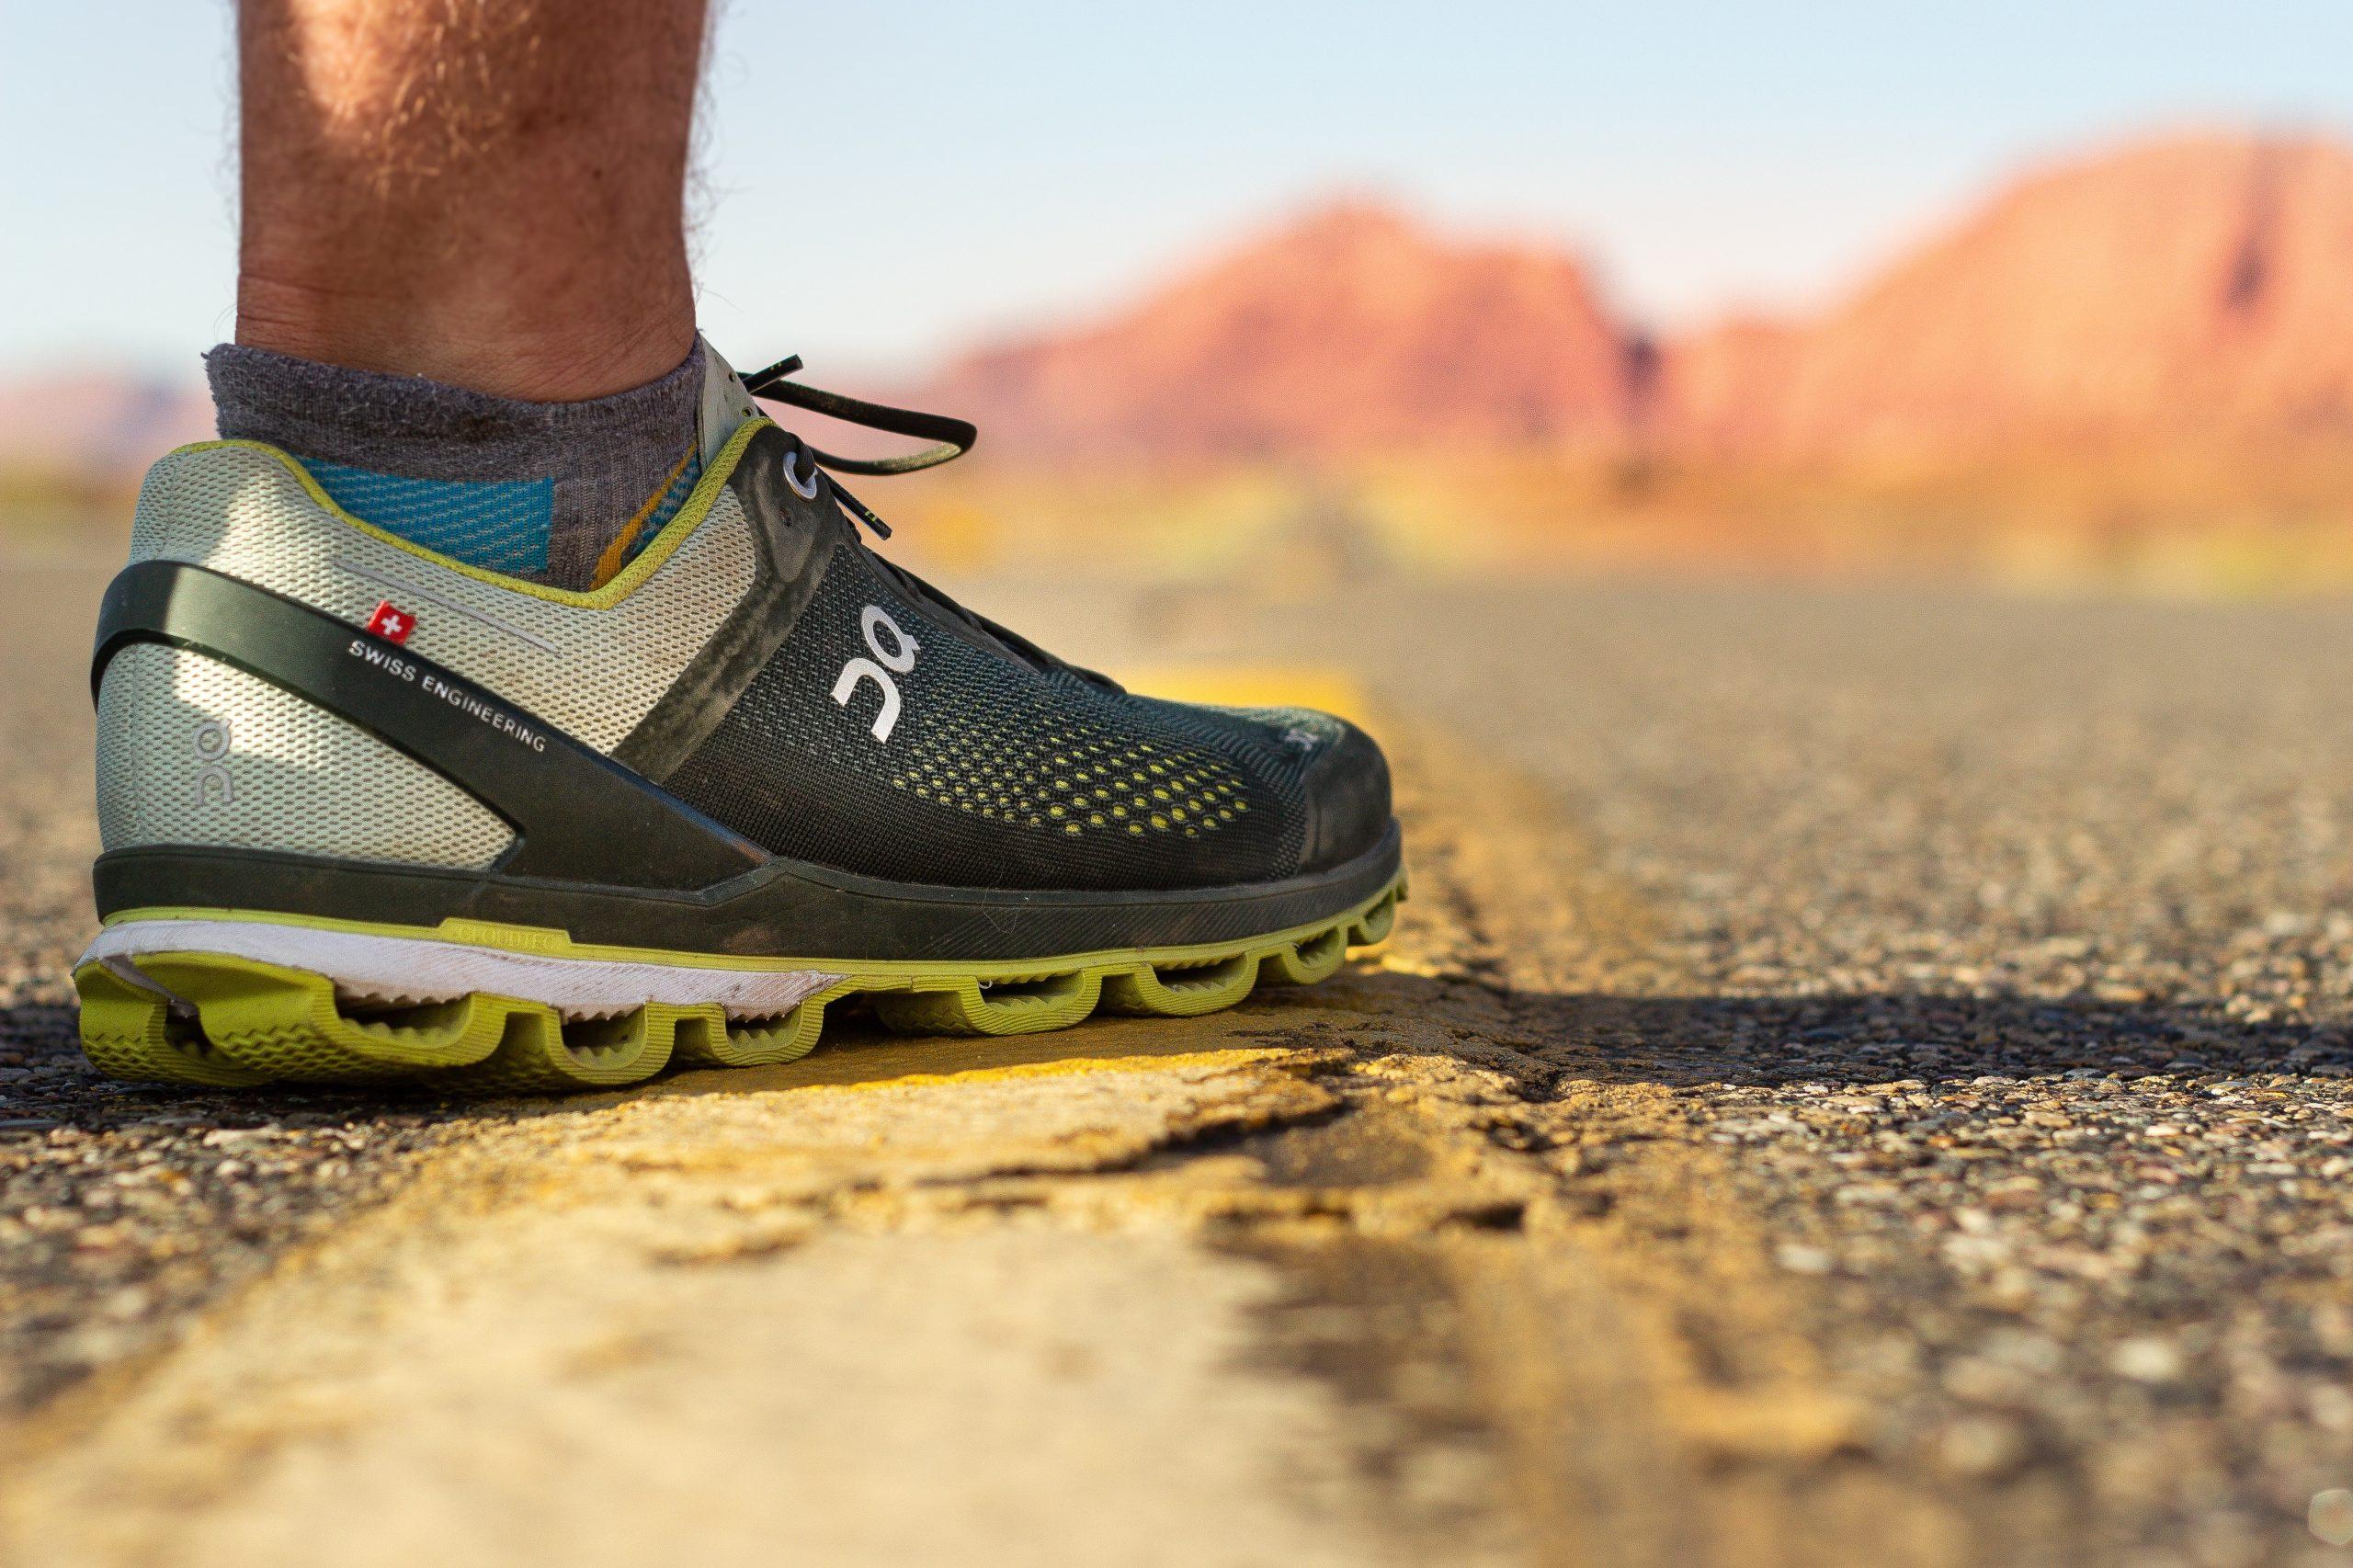 Đầu tư vào giày chạy bộ phù hợp có khả năng bám đường tốt và hỗ trợ mắt cá chân là rất quan trọng khi chạy địa hình. (Nguồn: Internet)